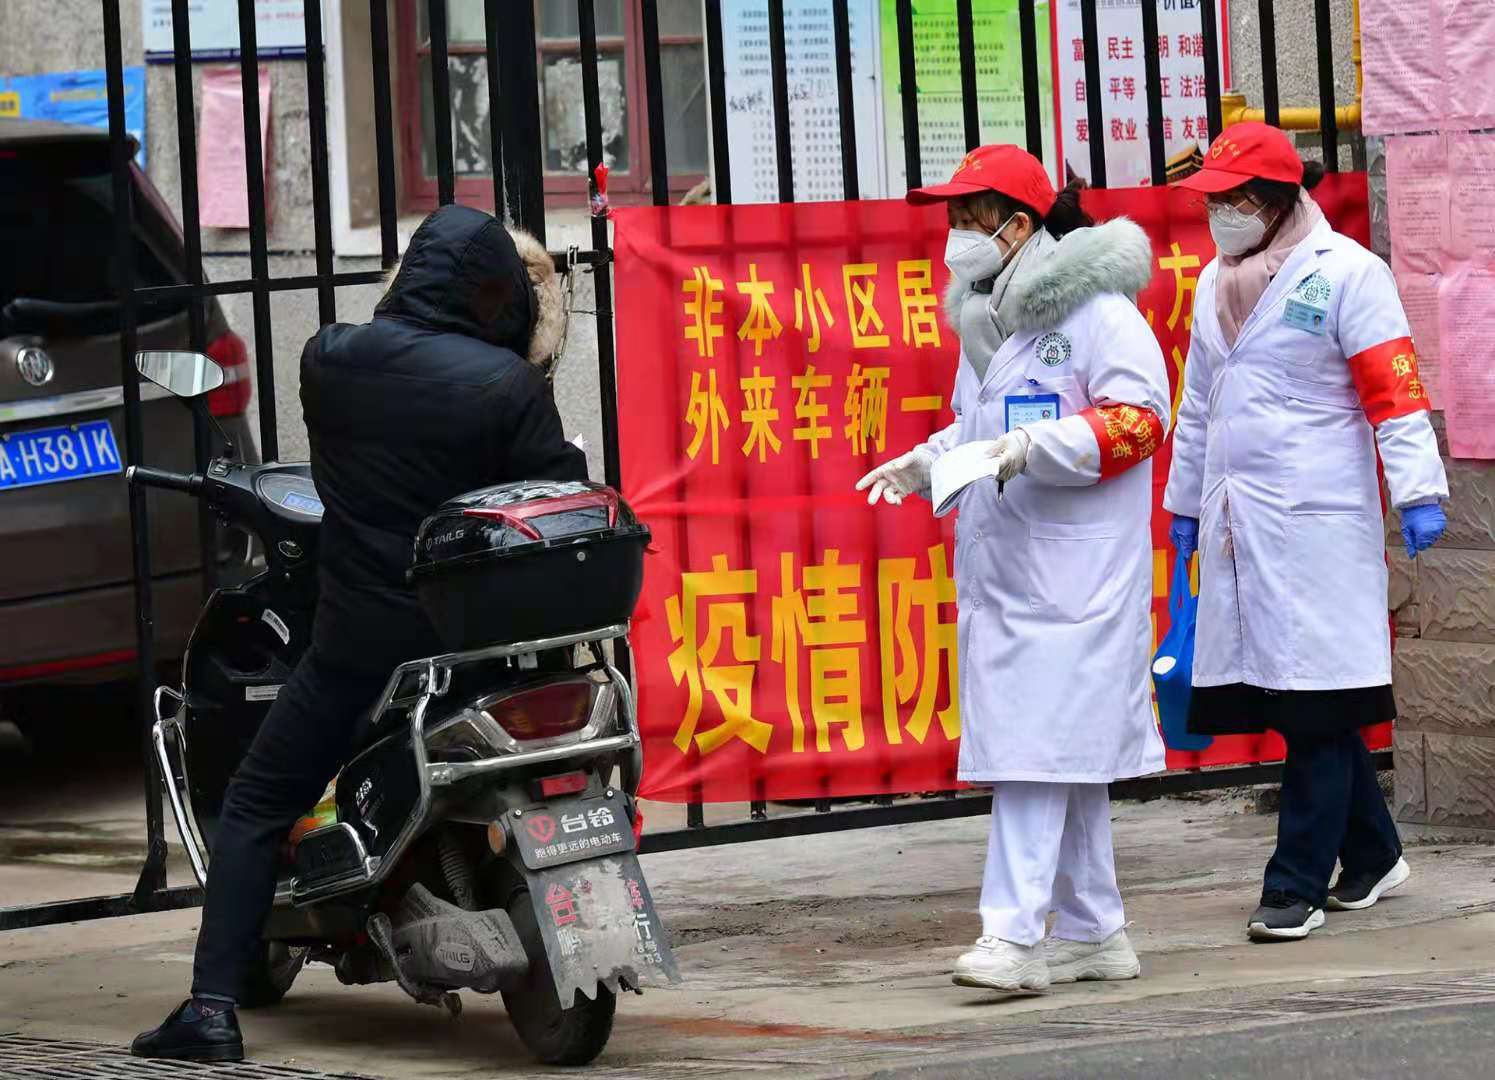 郑州市新冠肺炎疫情防控领导小组办公室发布7号通告